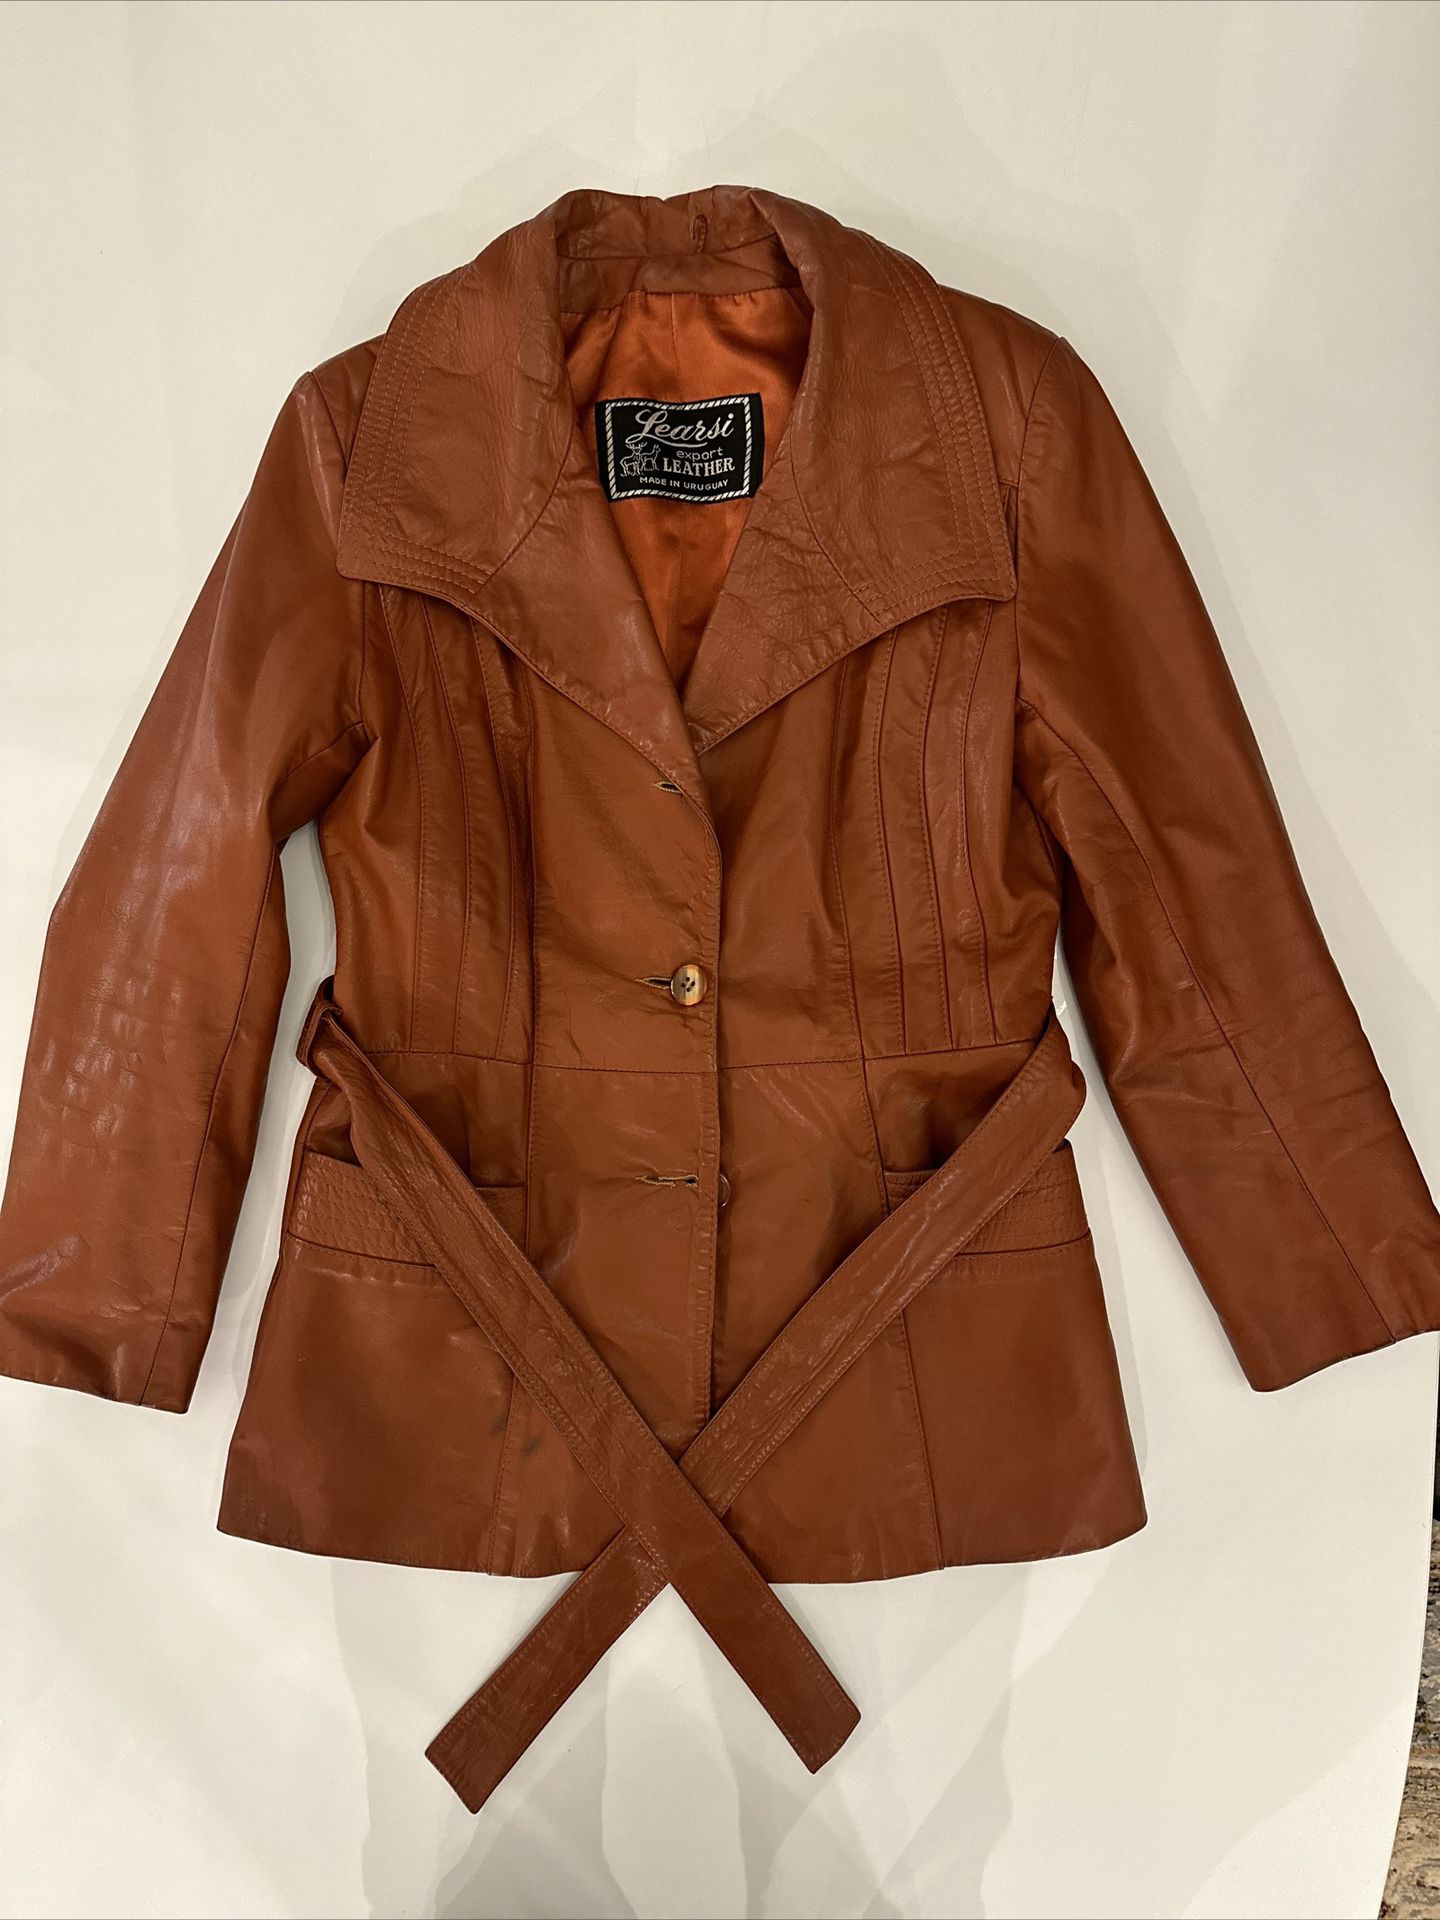 Vintage Learsi Leather Jacket